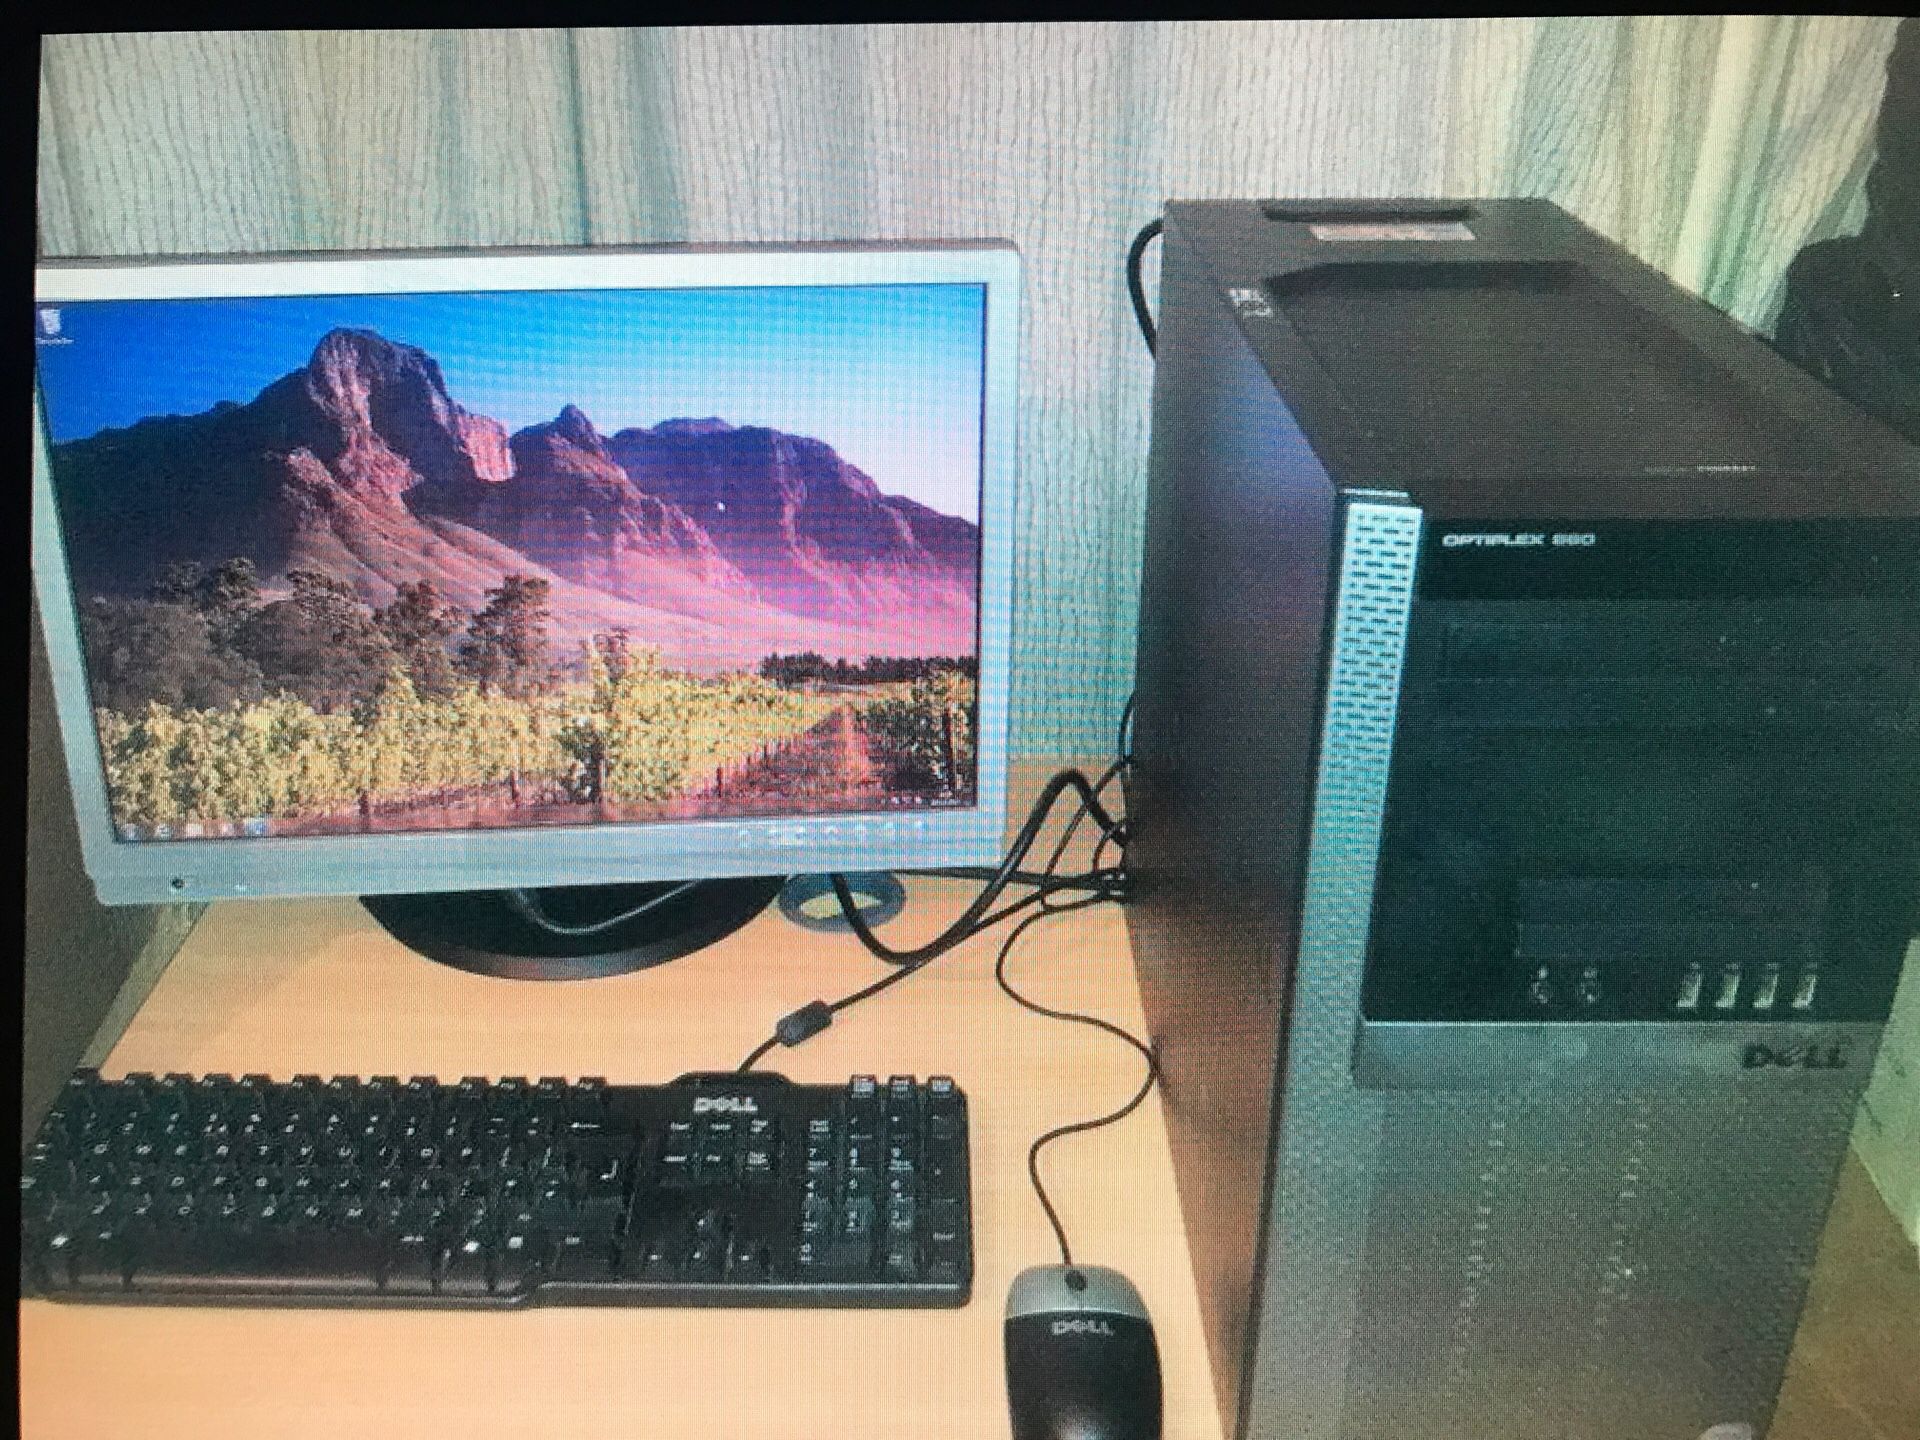 Core i7 Dell desktop and monitor